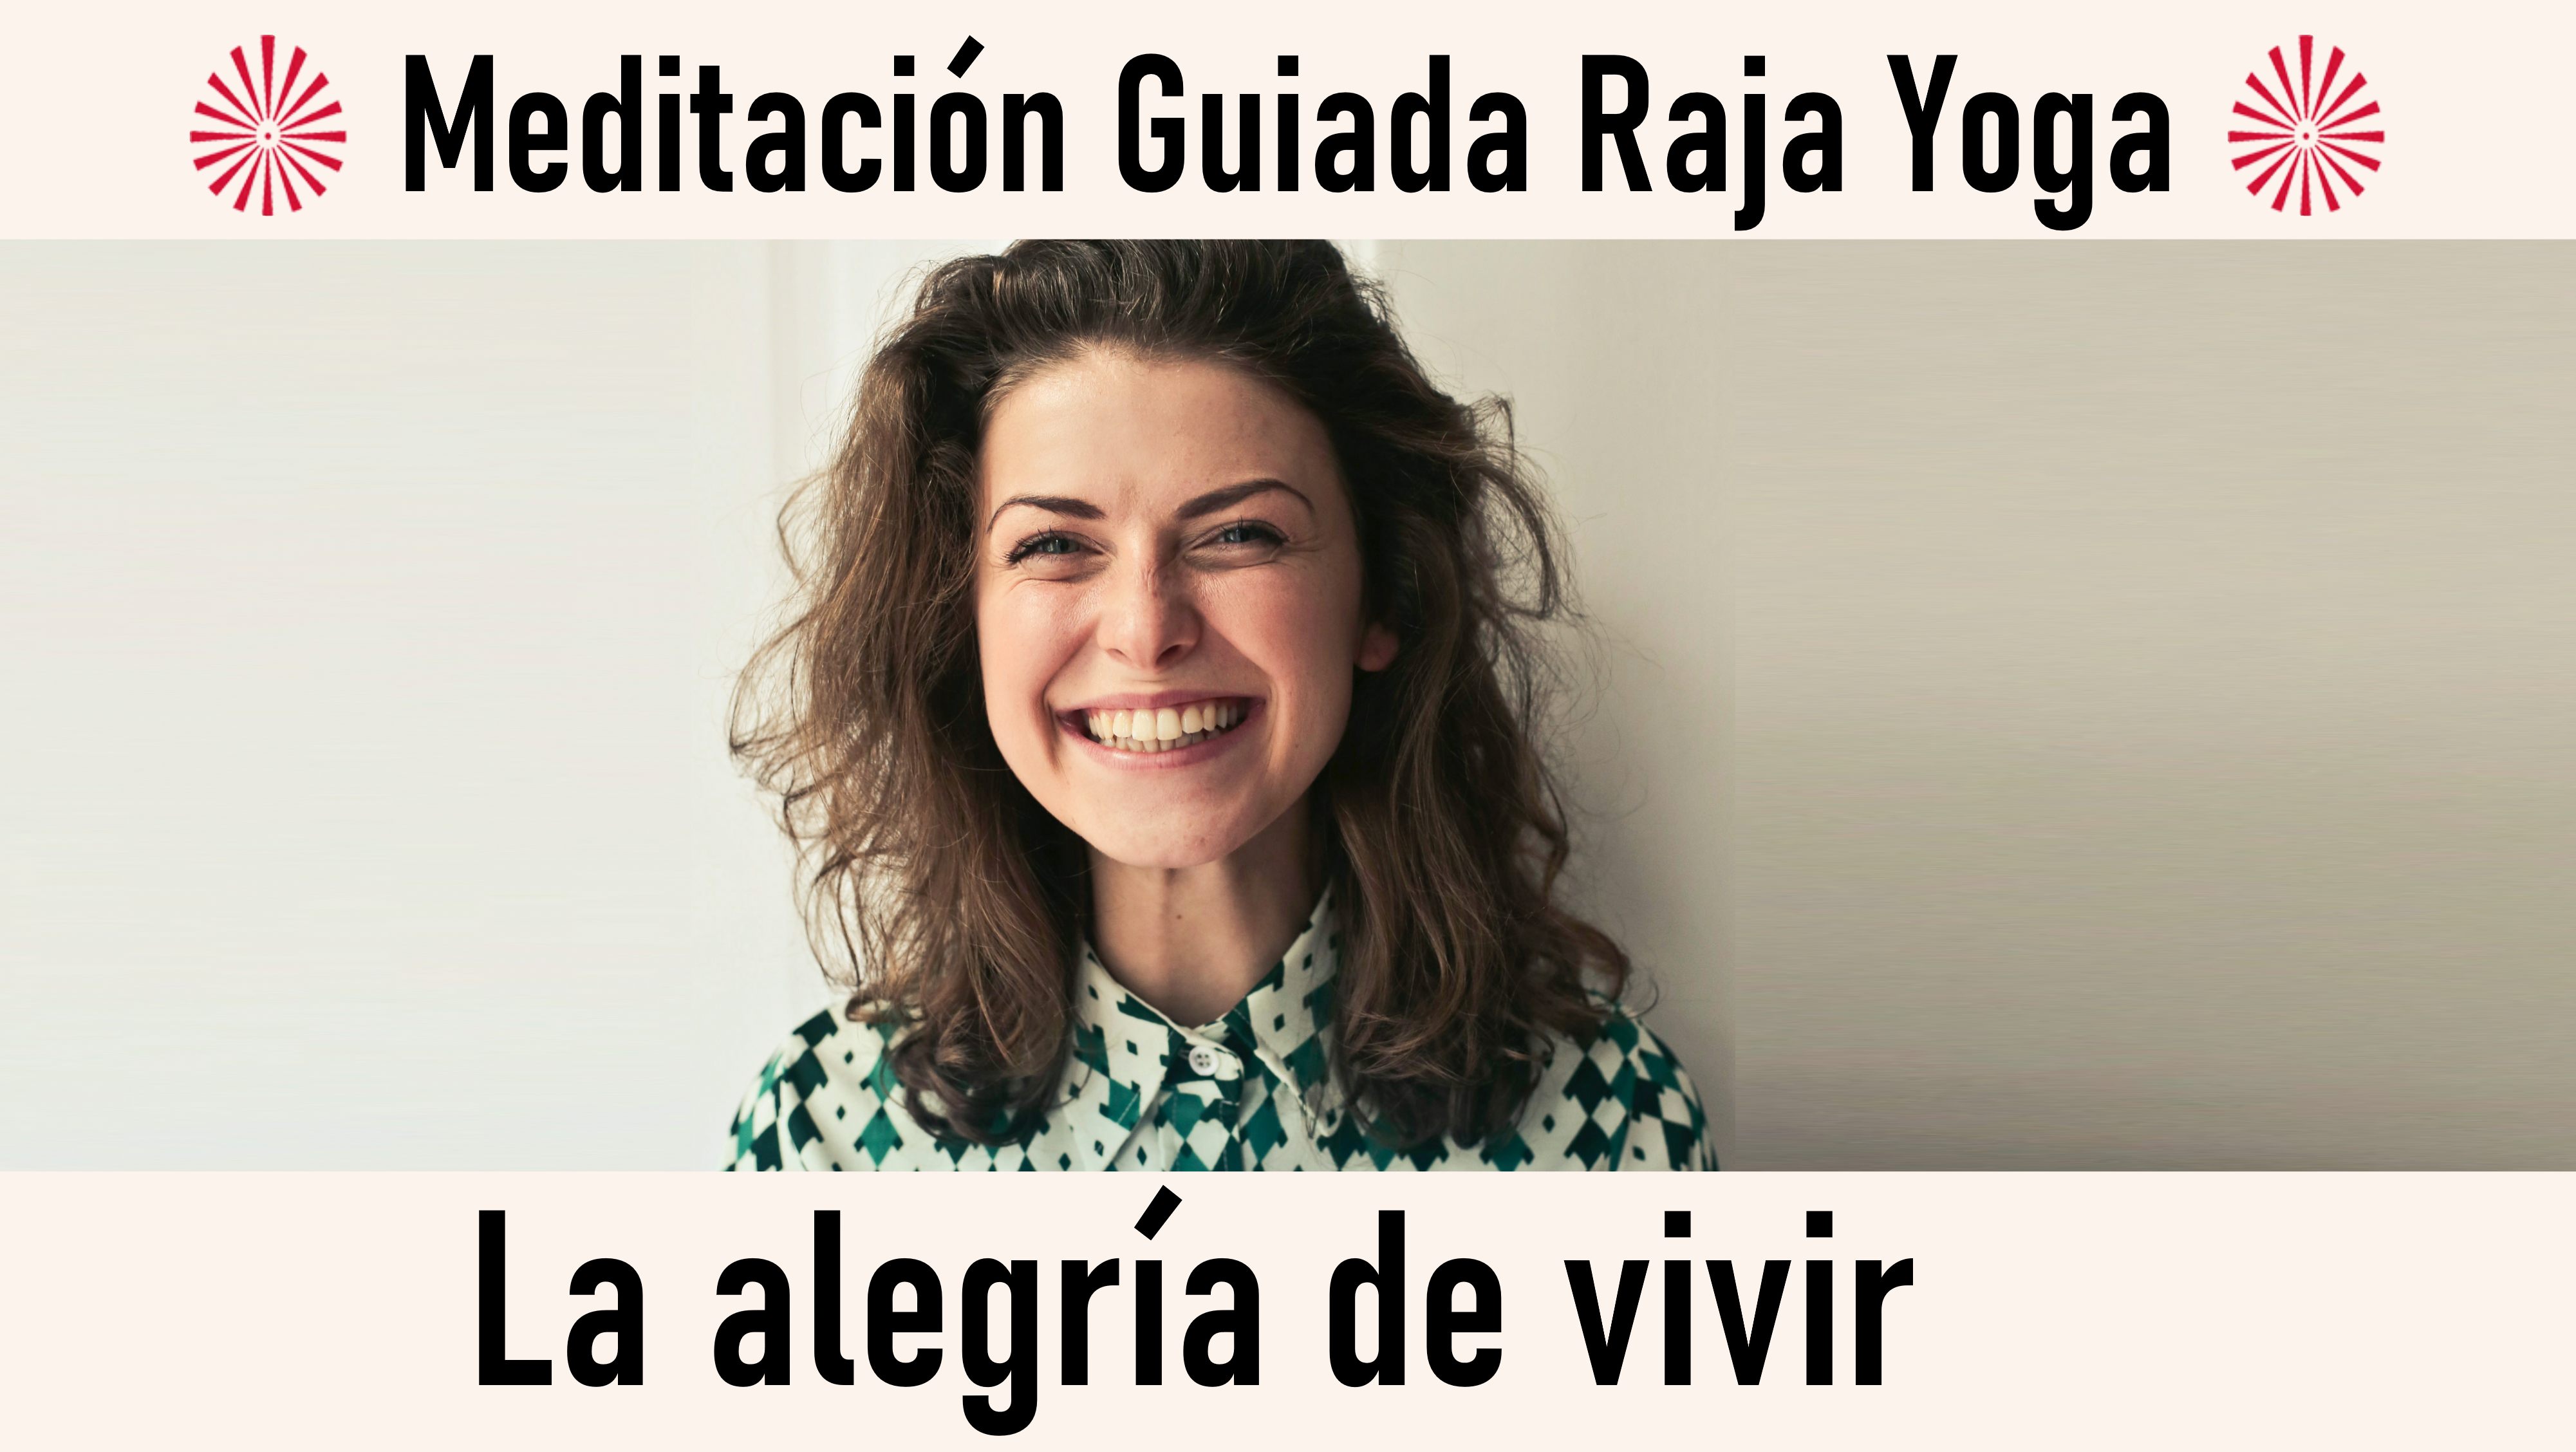 Meditación Raja Yoga: La alegría de vivir (9 Octubre 2020) On-line desde Madrid